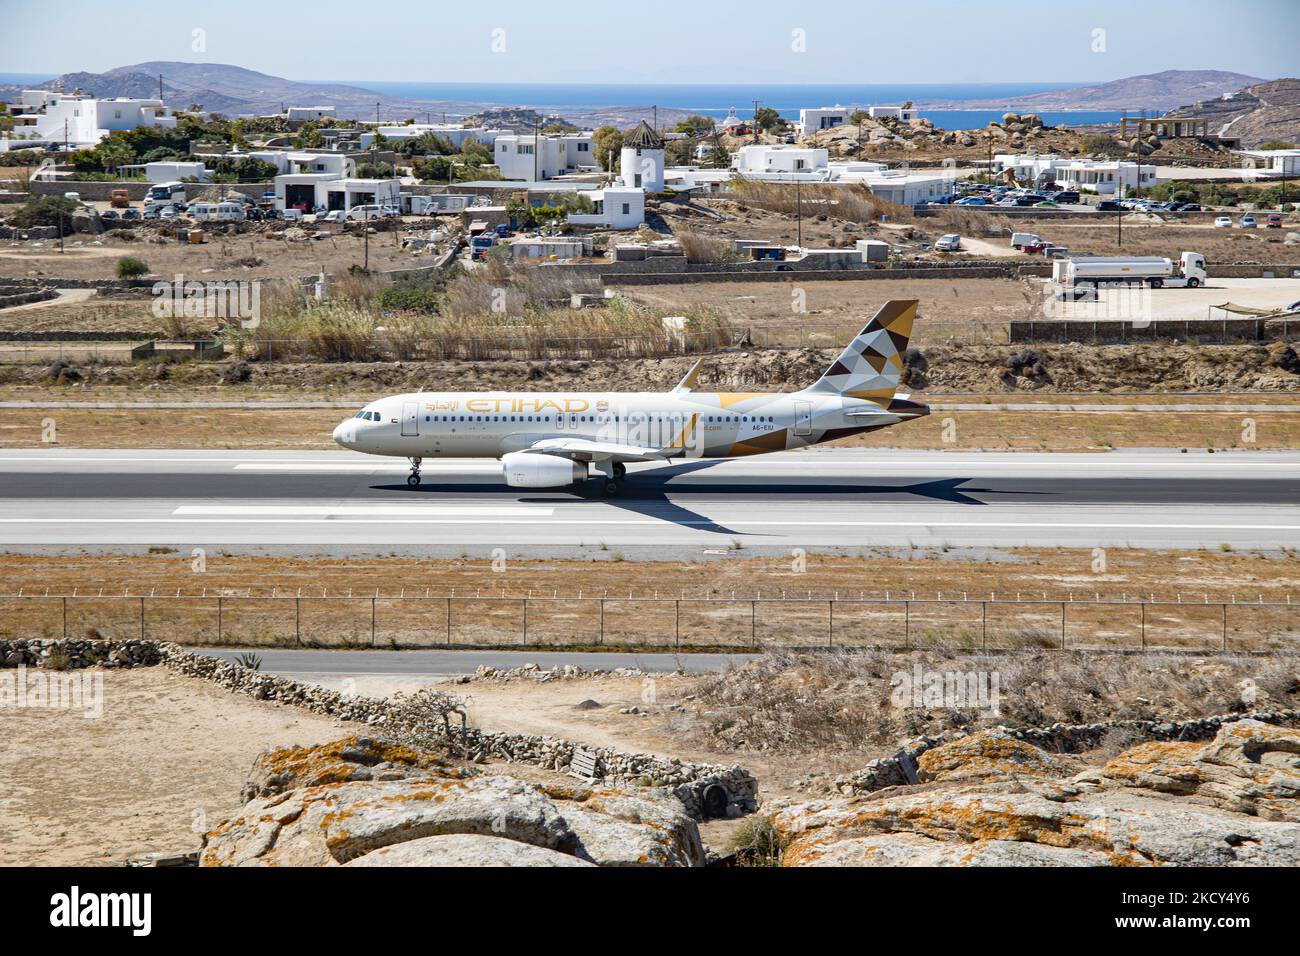 Etihad Airways Airbus A320 comme vu au sol, au départ et au départ de l'aéroport de Mykonos JMK. L'avion avec enregistrement A6-EIU emmène le passager après le décollage à l'aéroport d'Abu Dhabi. Etihad est le deuxième porte-drapeau des Émirats arabes Unis. L'île grecque de Myconos est une destination de voyage méditerranéenne très prisée pour des vacances dans les Cyclades, la mer Égée avec les bâtiments emblématiques blanchis à la chaux, les plages de sable et la célèbre fête aux bars de plage. L'industrie de l'aviation, des voyages, des loisirs, du tourisme et du trafic de passagers est en phase avec la Co Banque D'Images